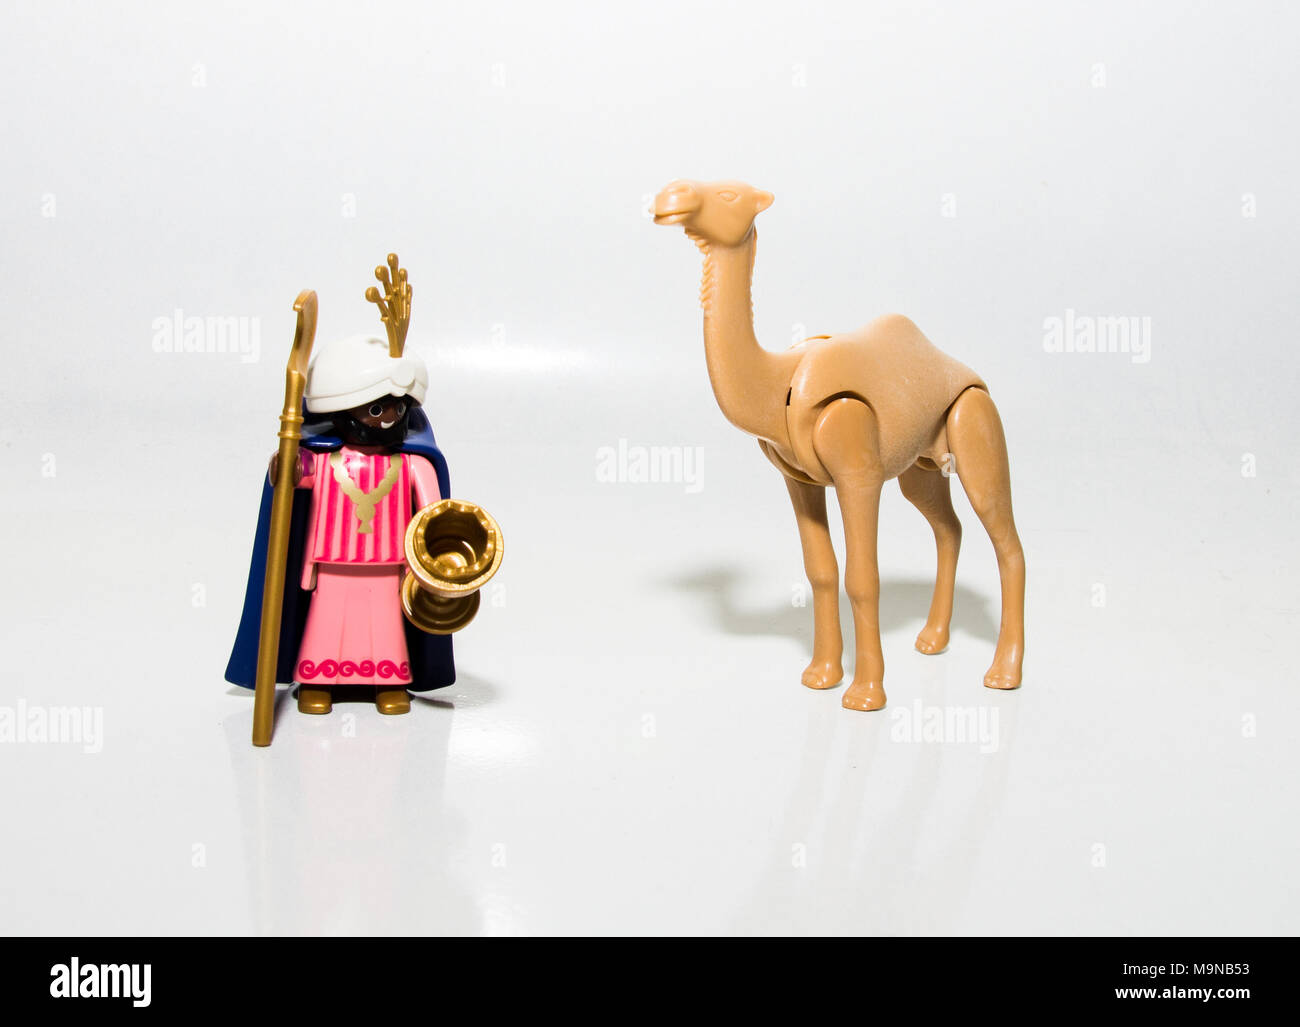 Spielzeug Kamel Stockfotos und -bilder Kaufen - Alamy